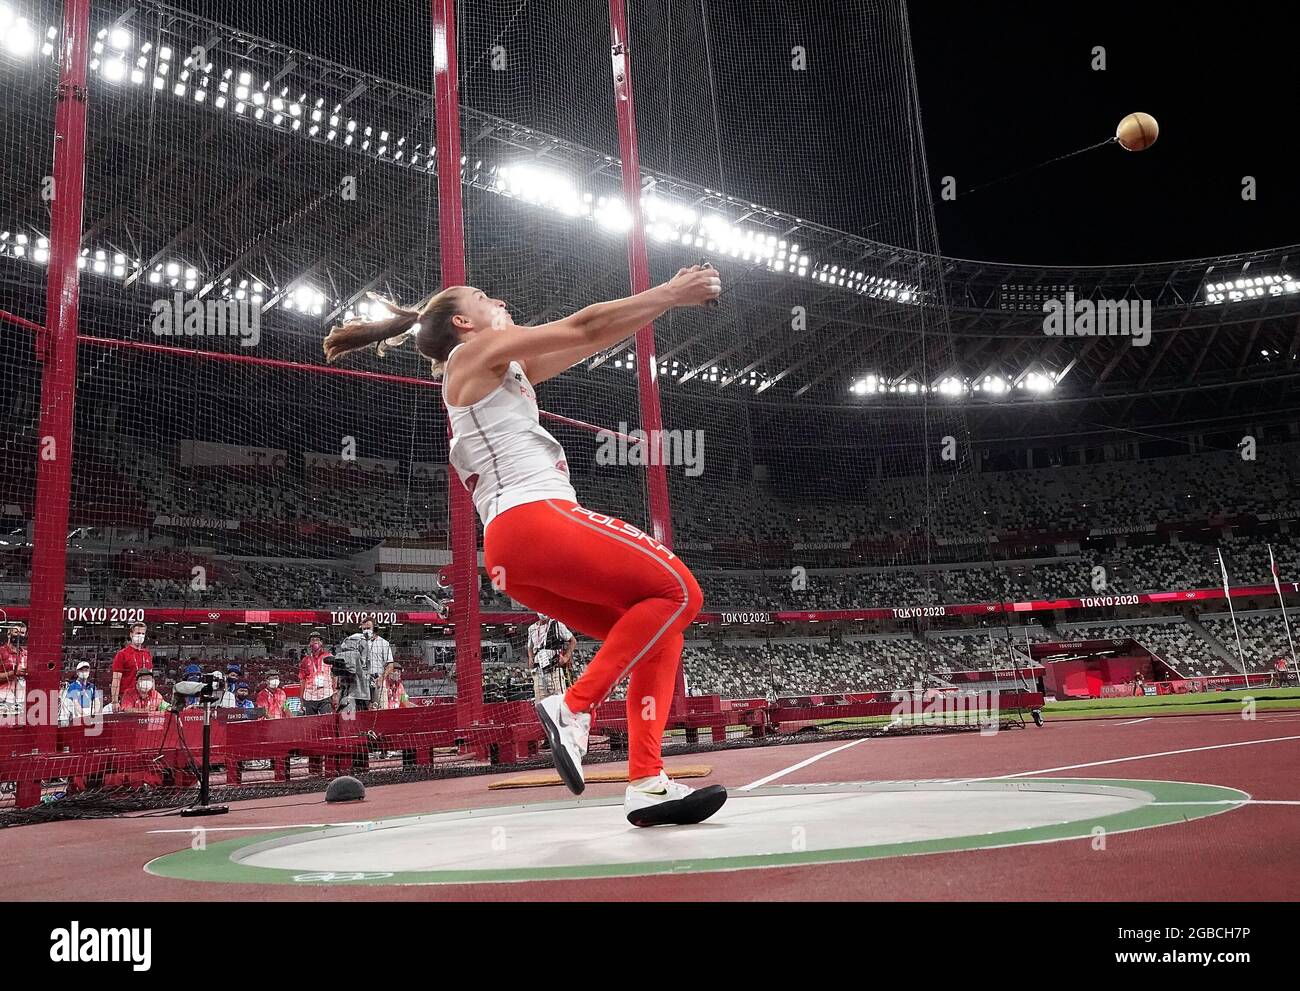 (210803) -- TOKYO, 3 agosto 2021 (Xinhua) -- Malwina Kopron di Polonia compete durante la finale di lancio del martello della donna ai Giochi Olimpici di Tokyo 2020 a Tokyo, Giappone, 3 agosto 2021. (Xinhua/Wang Lili) Foto Stock